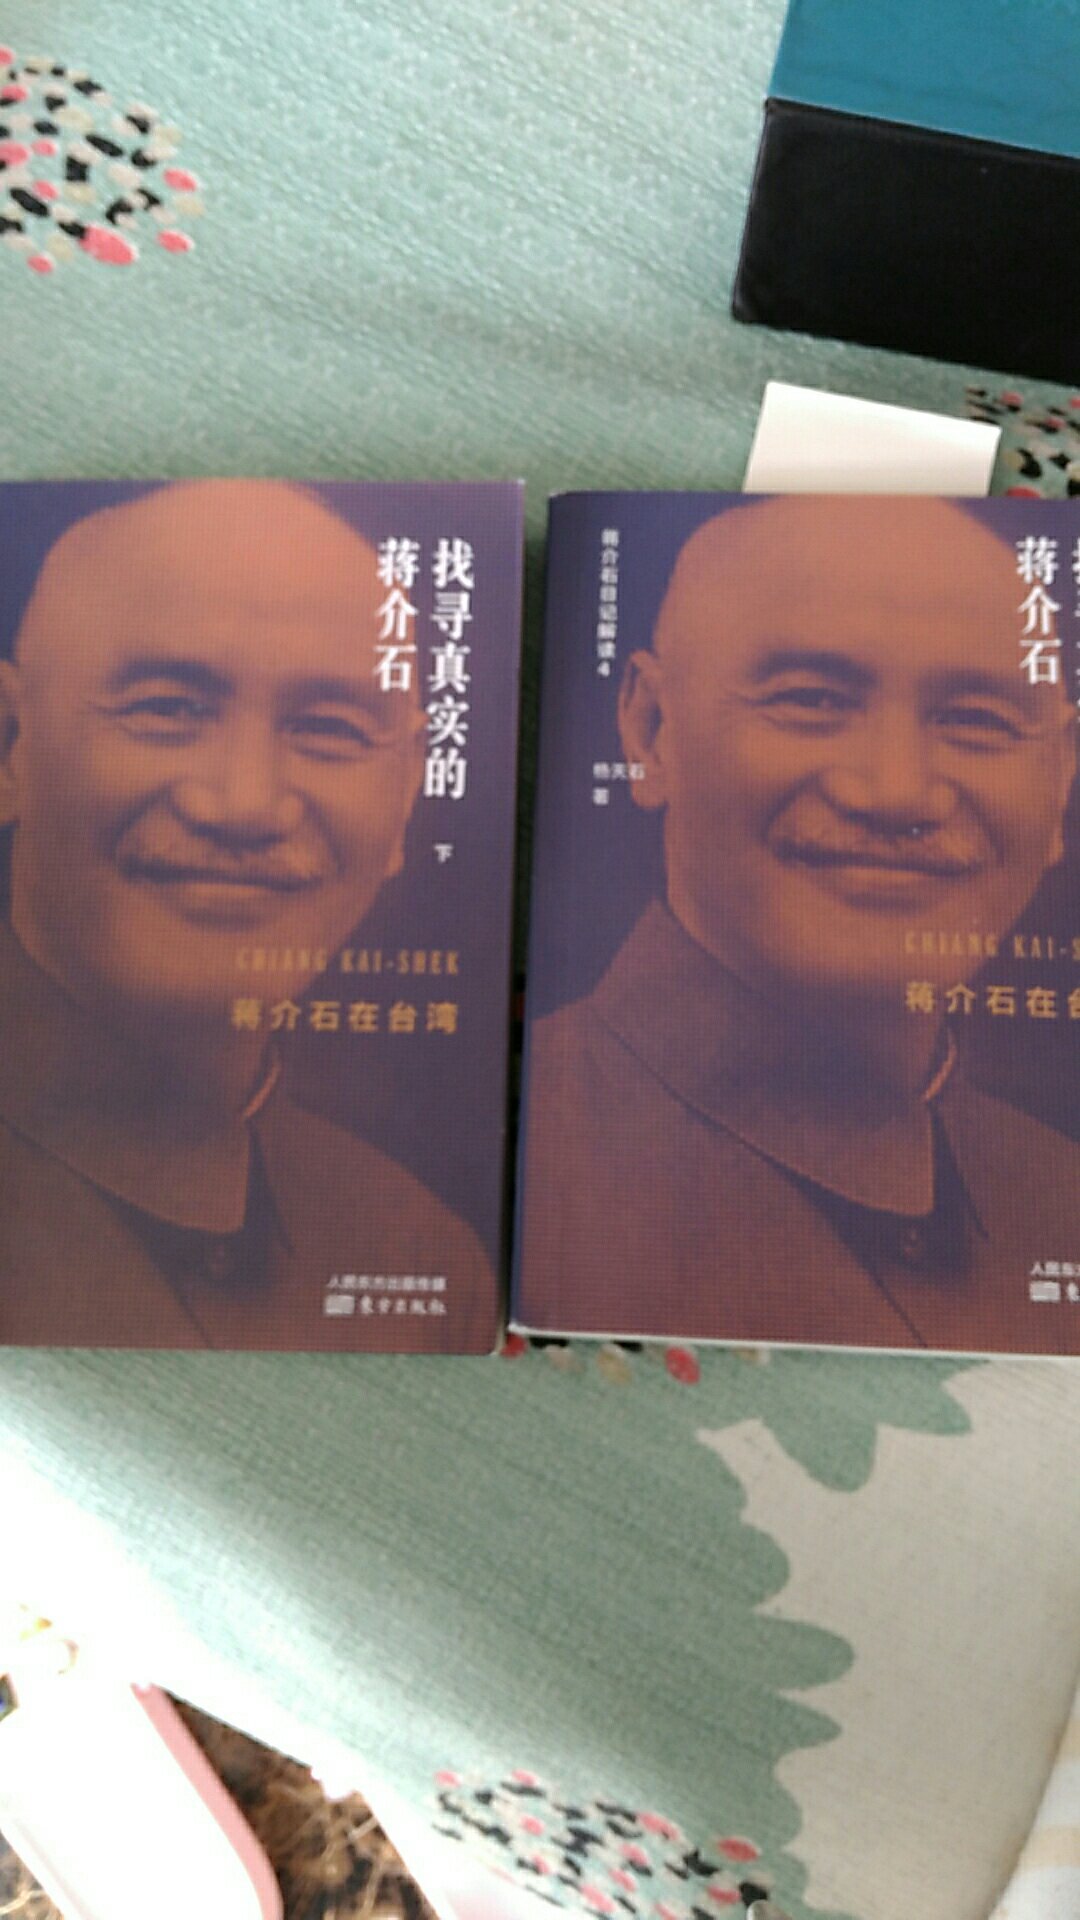 这两册书是从蒋介石退出大陆统治开始讲起的，所以请够买的人注意这点，书还可以，普通阅读纸张字迹清晰度够用了。